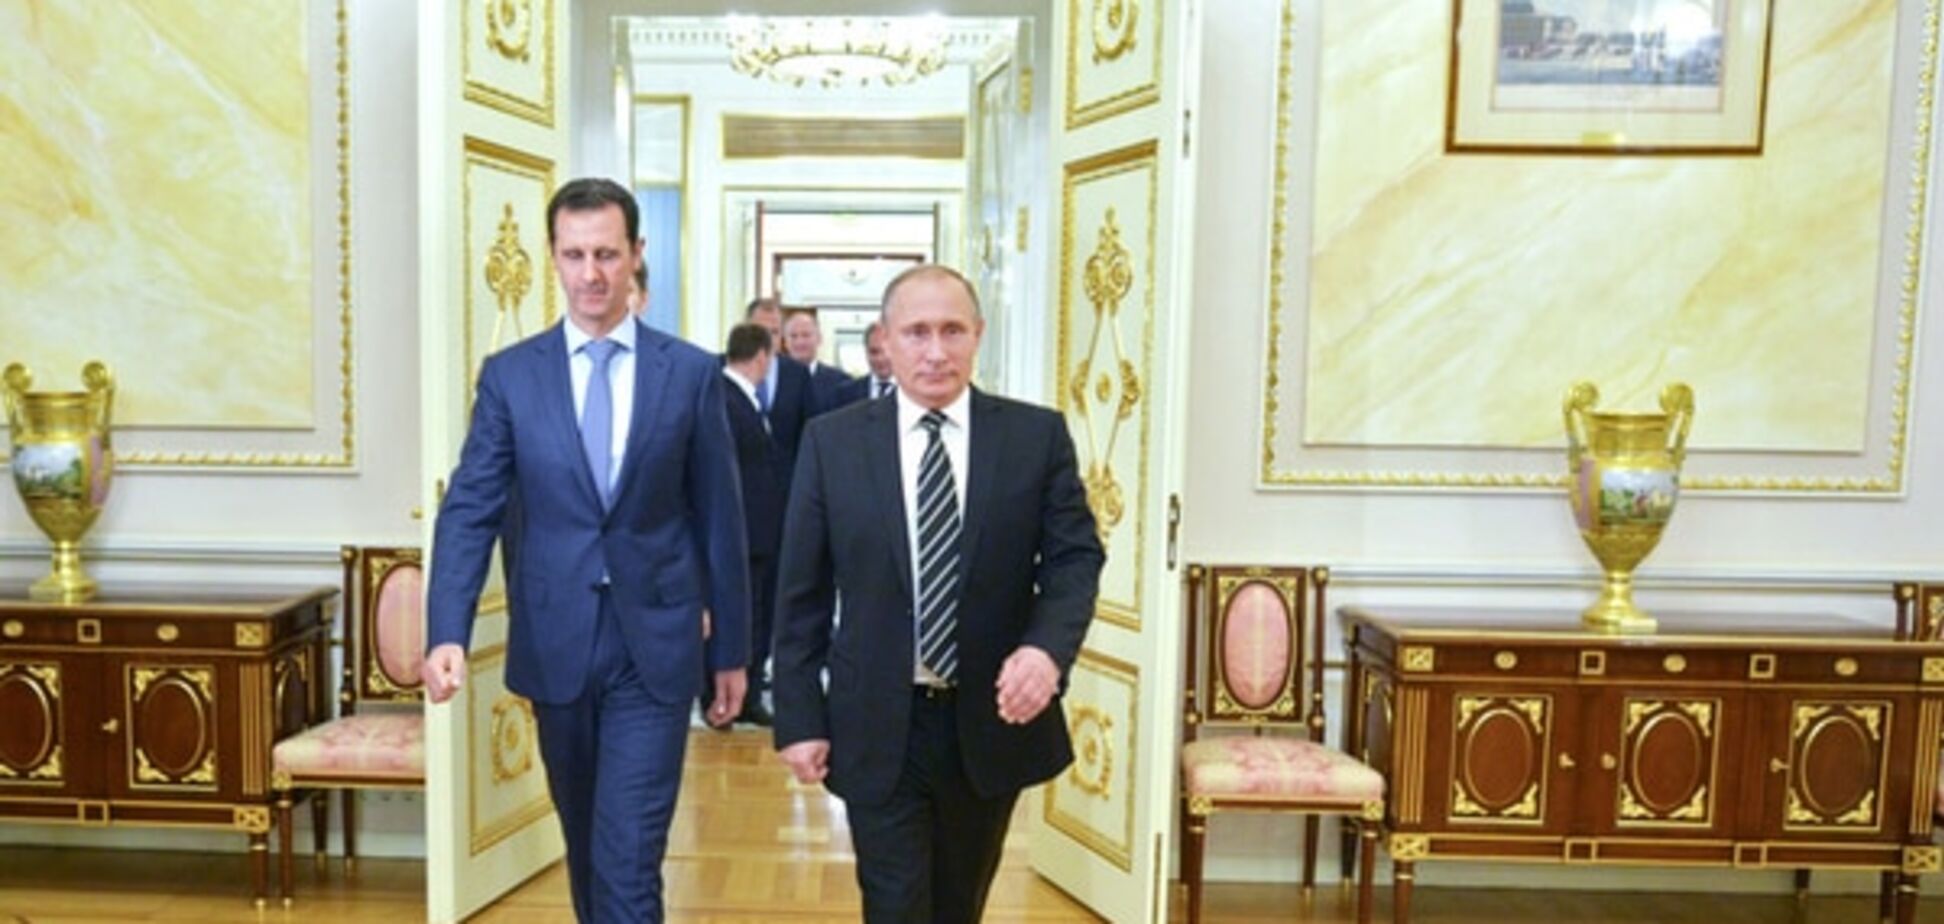 СМИ: встреча Путина и Асада может означать конец войны в Сирии